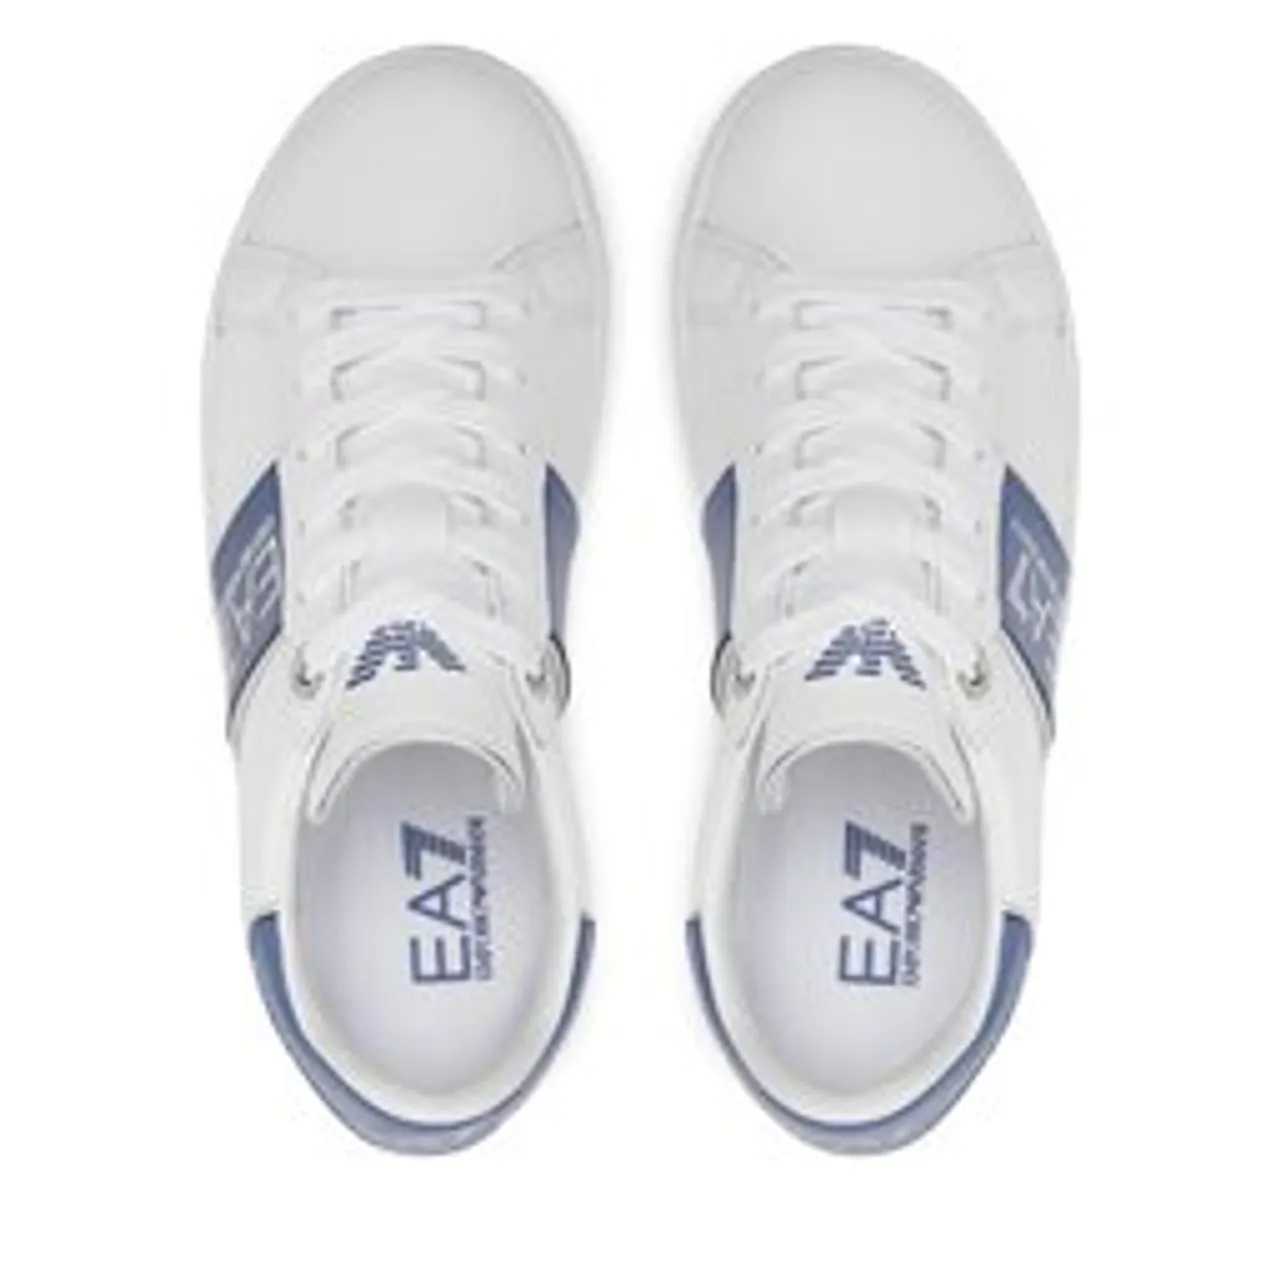 Sneakers EA7 Emporio Armani XSX109 XOT74 T502 White+Marlin+Silver